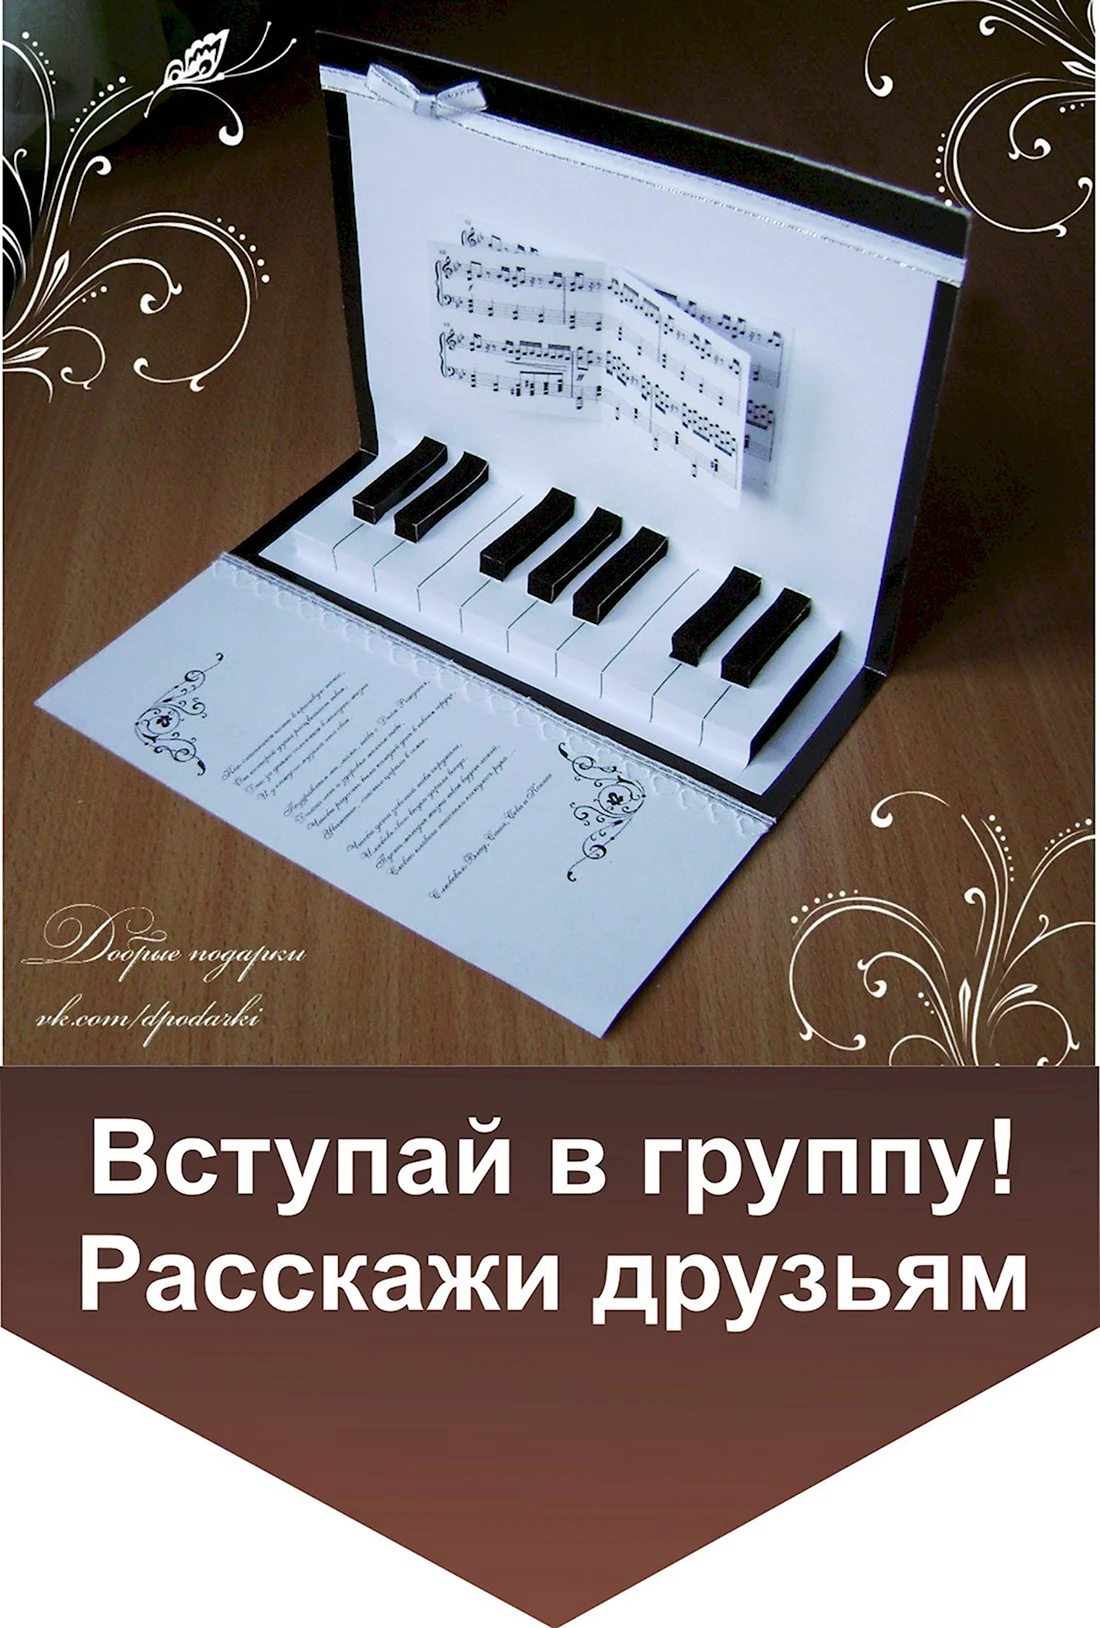 Открытка для учителя фортепьяно. Открытка с днем рождения